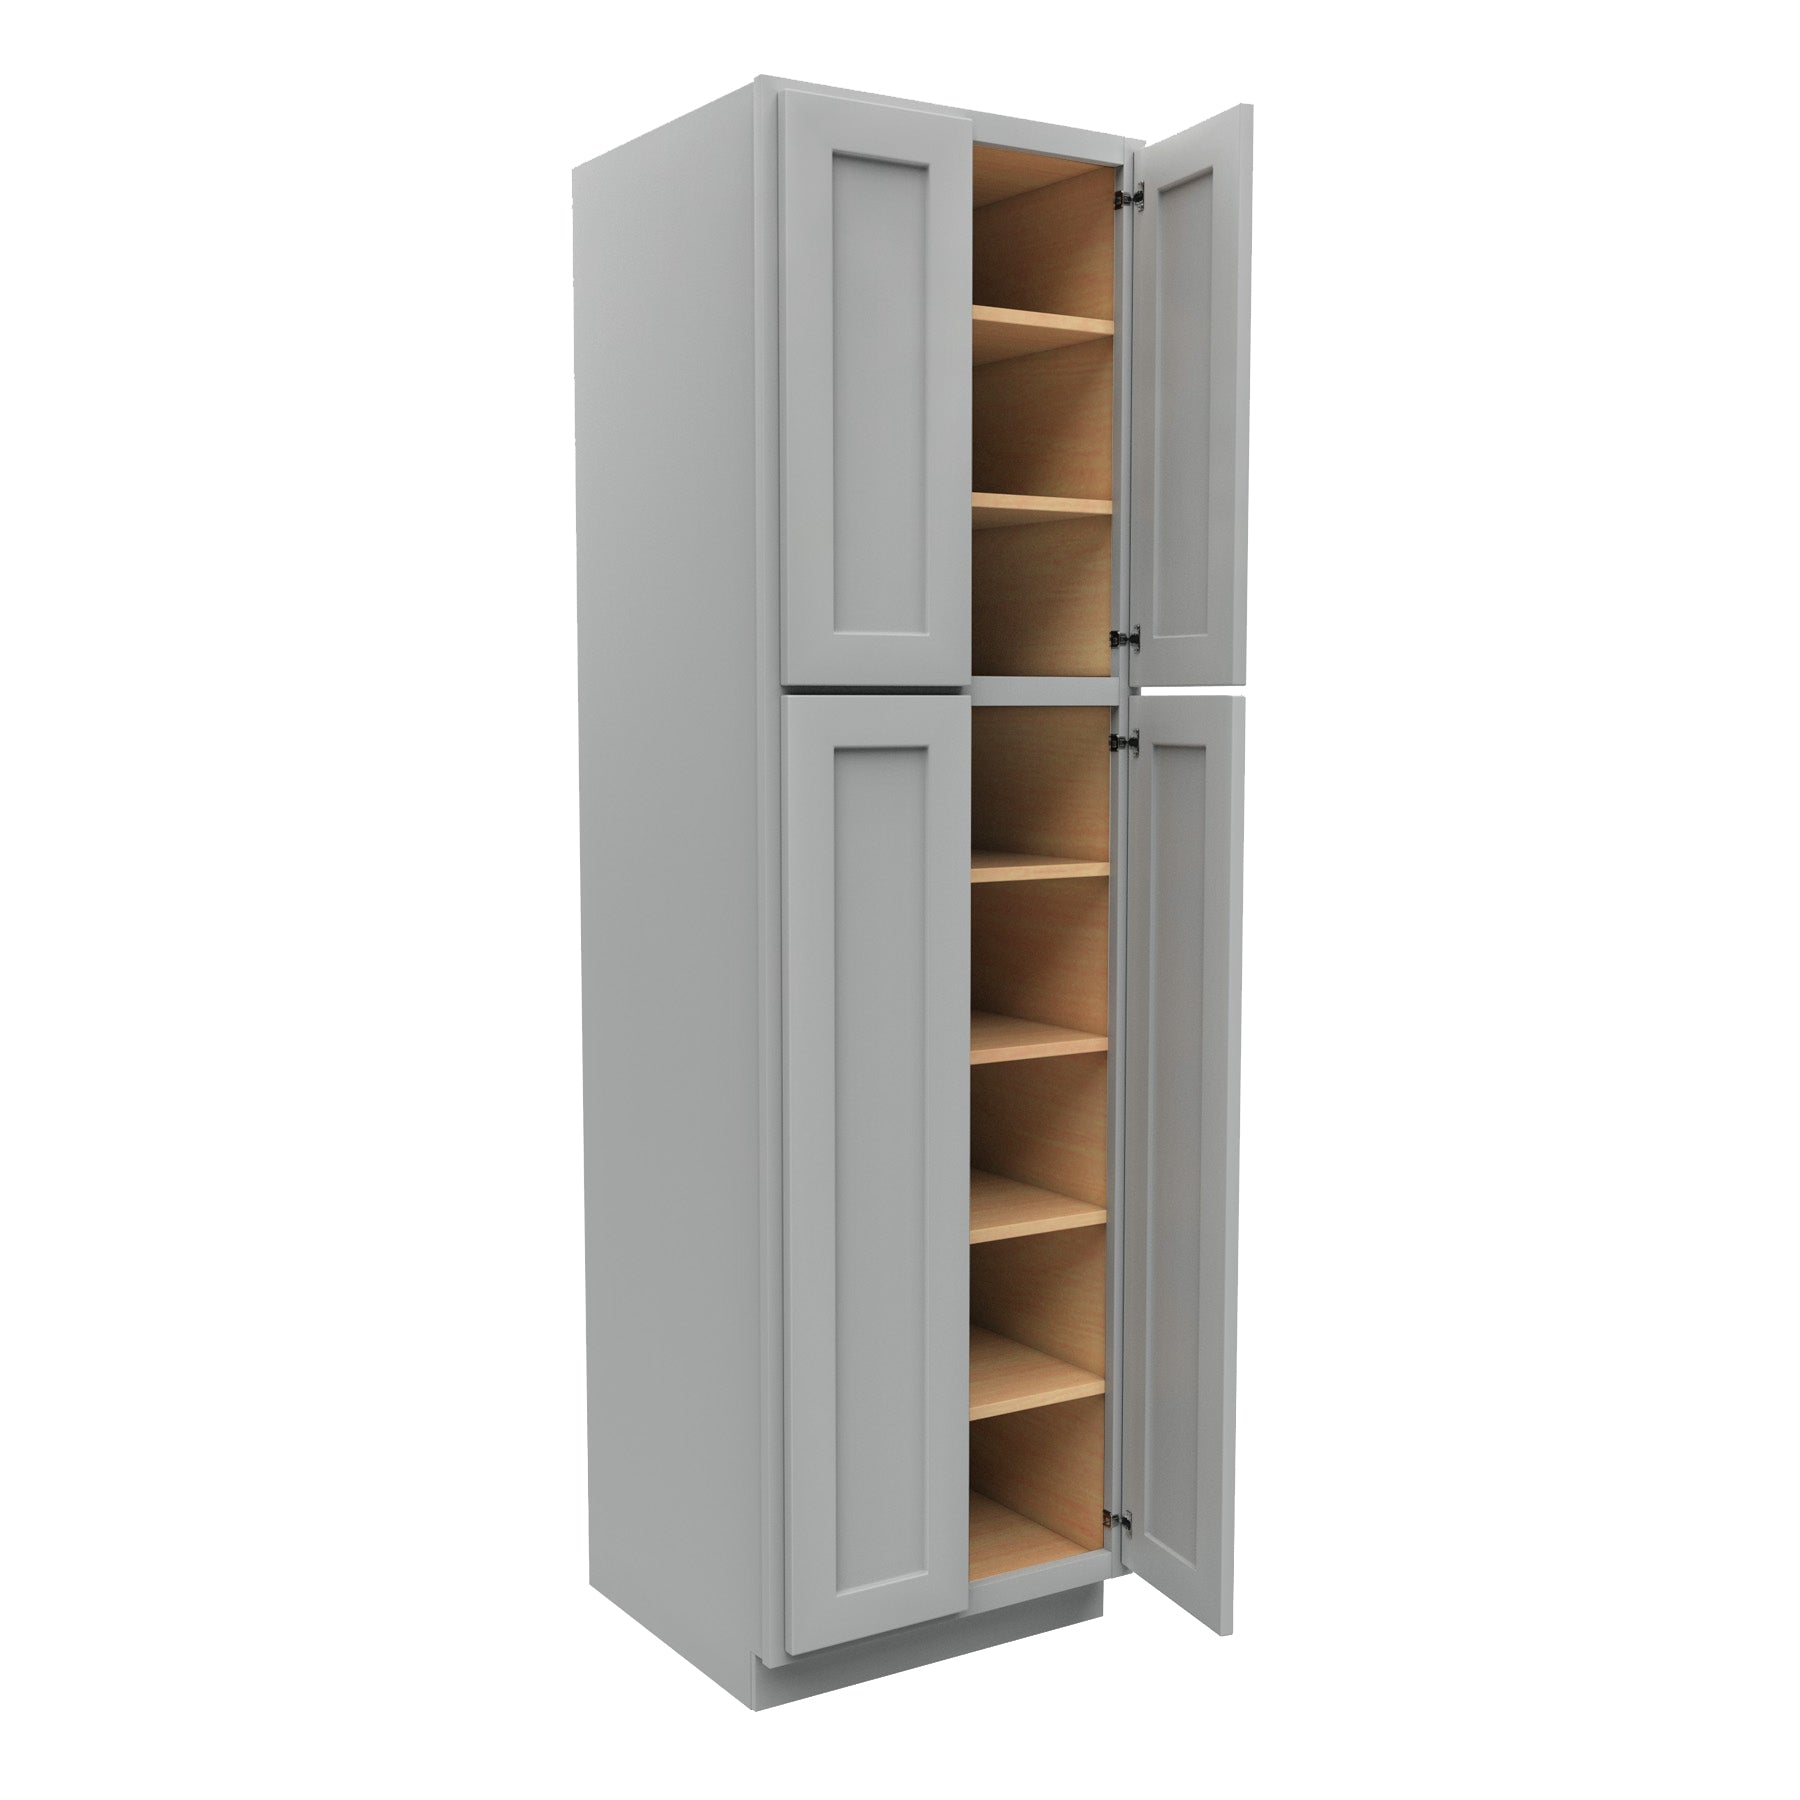 Luxor Misty Grey - Double Door Utility Cabinet | 24"W x 84"H x 24"D